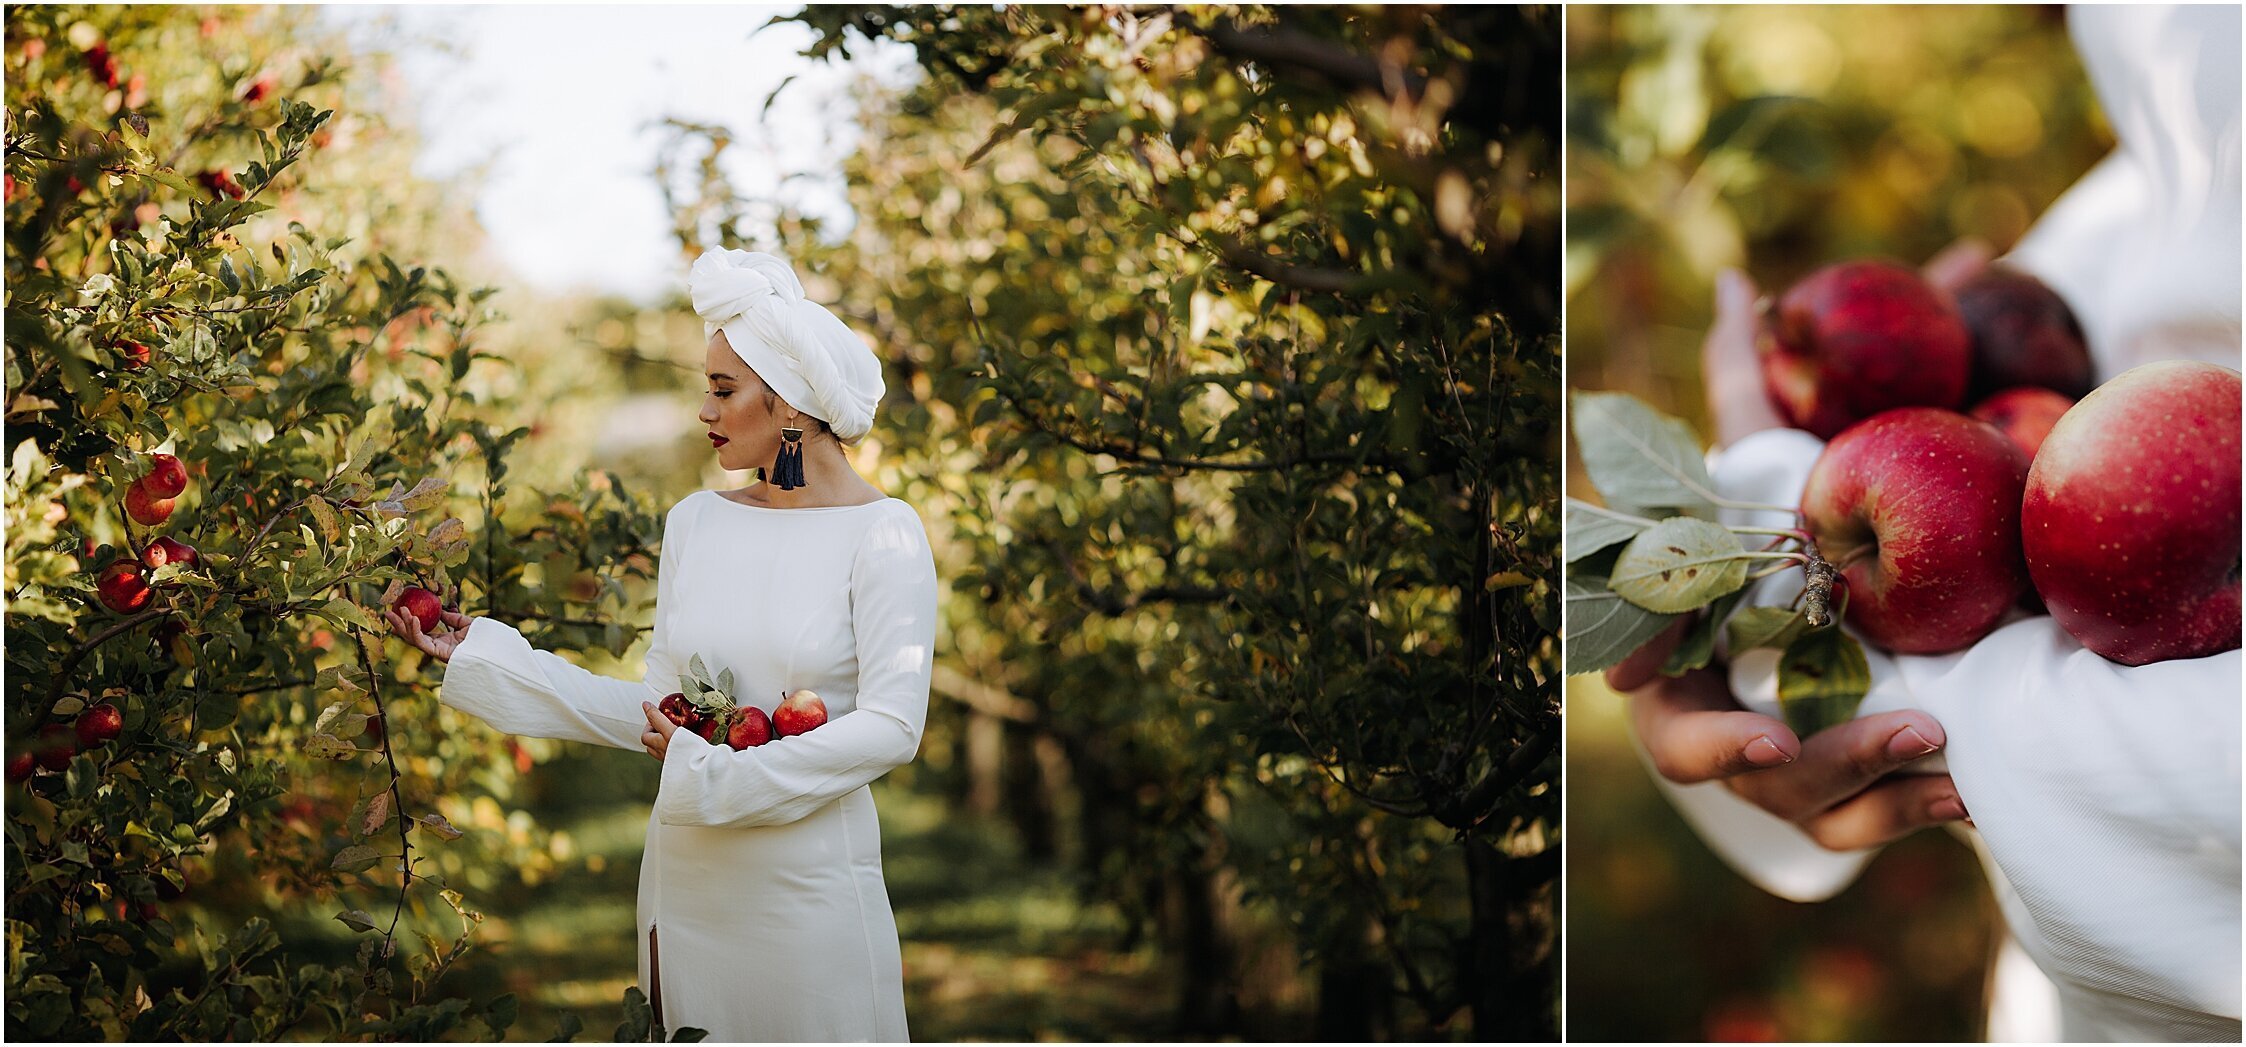 Zanda+Auckland+wedding+photographer+unique+portrait+photoshoot+ideas+autumn+winter+Windmill+apple+orchard+Coatesville+New+Zealand_4.jpeg